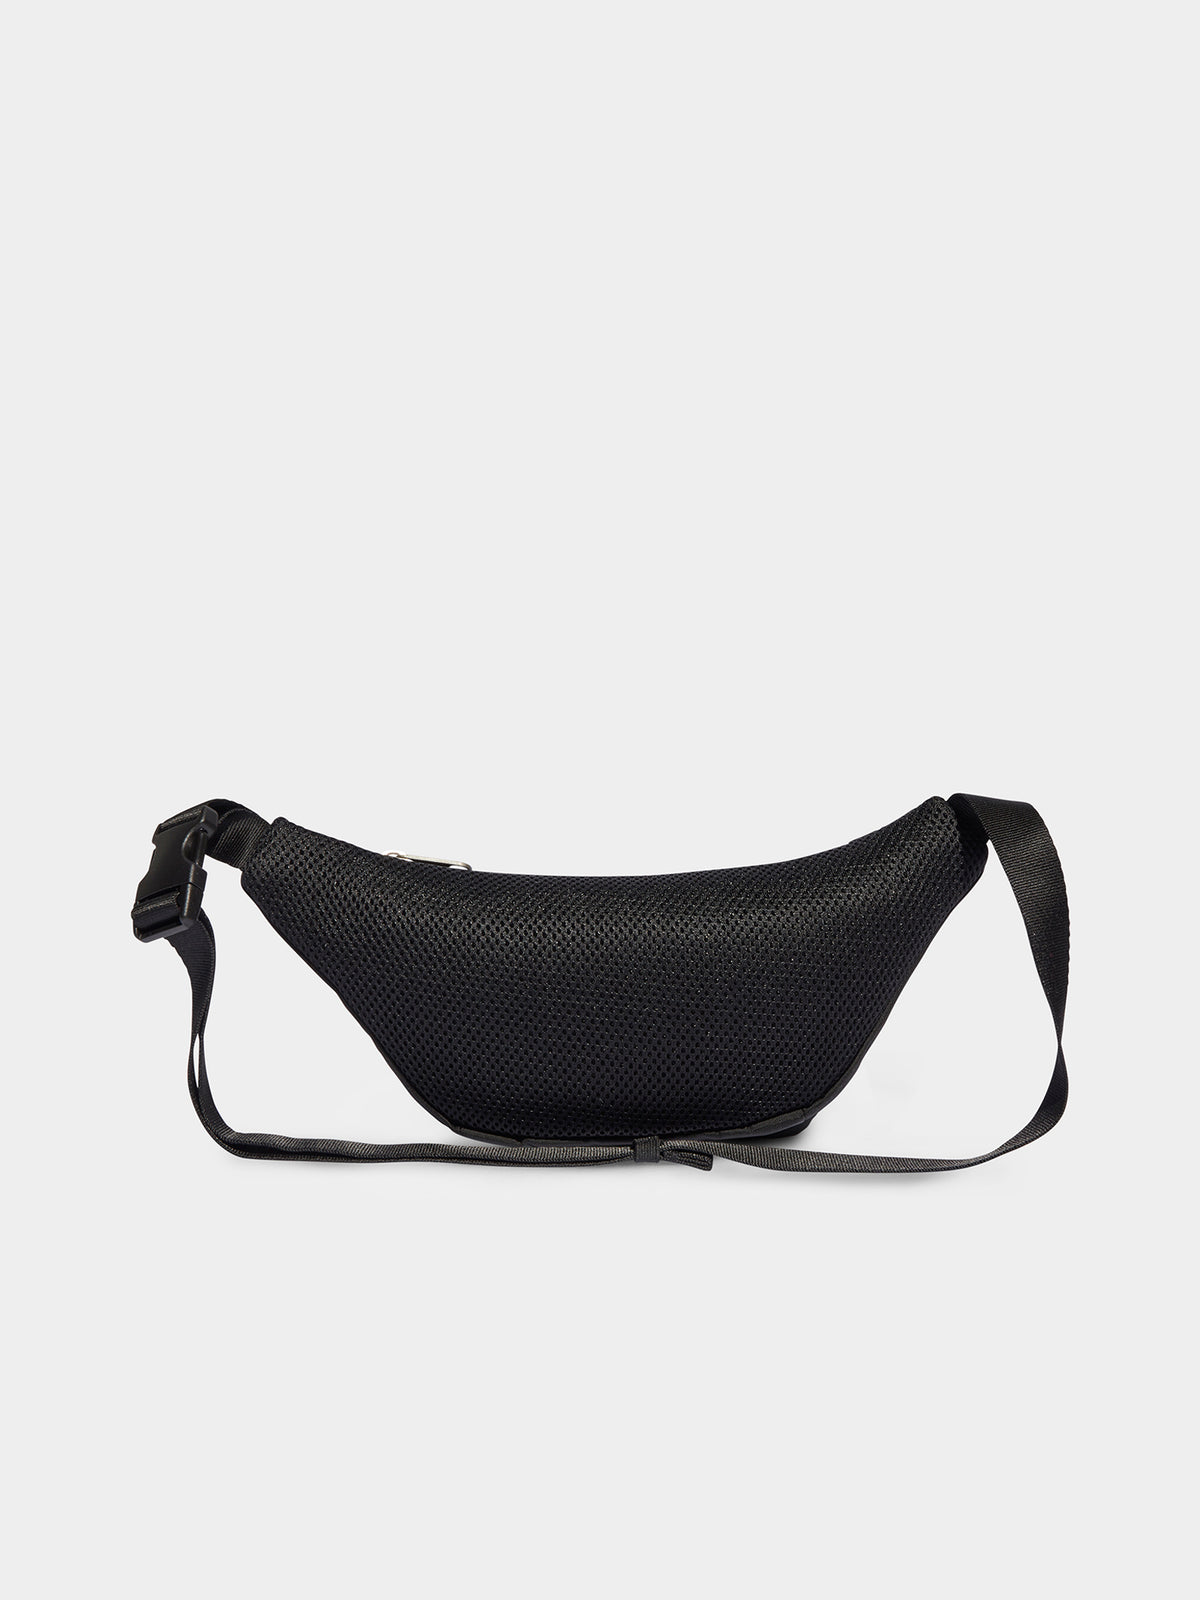 Premium Essentials Waist Bag in Black